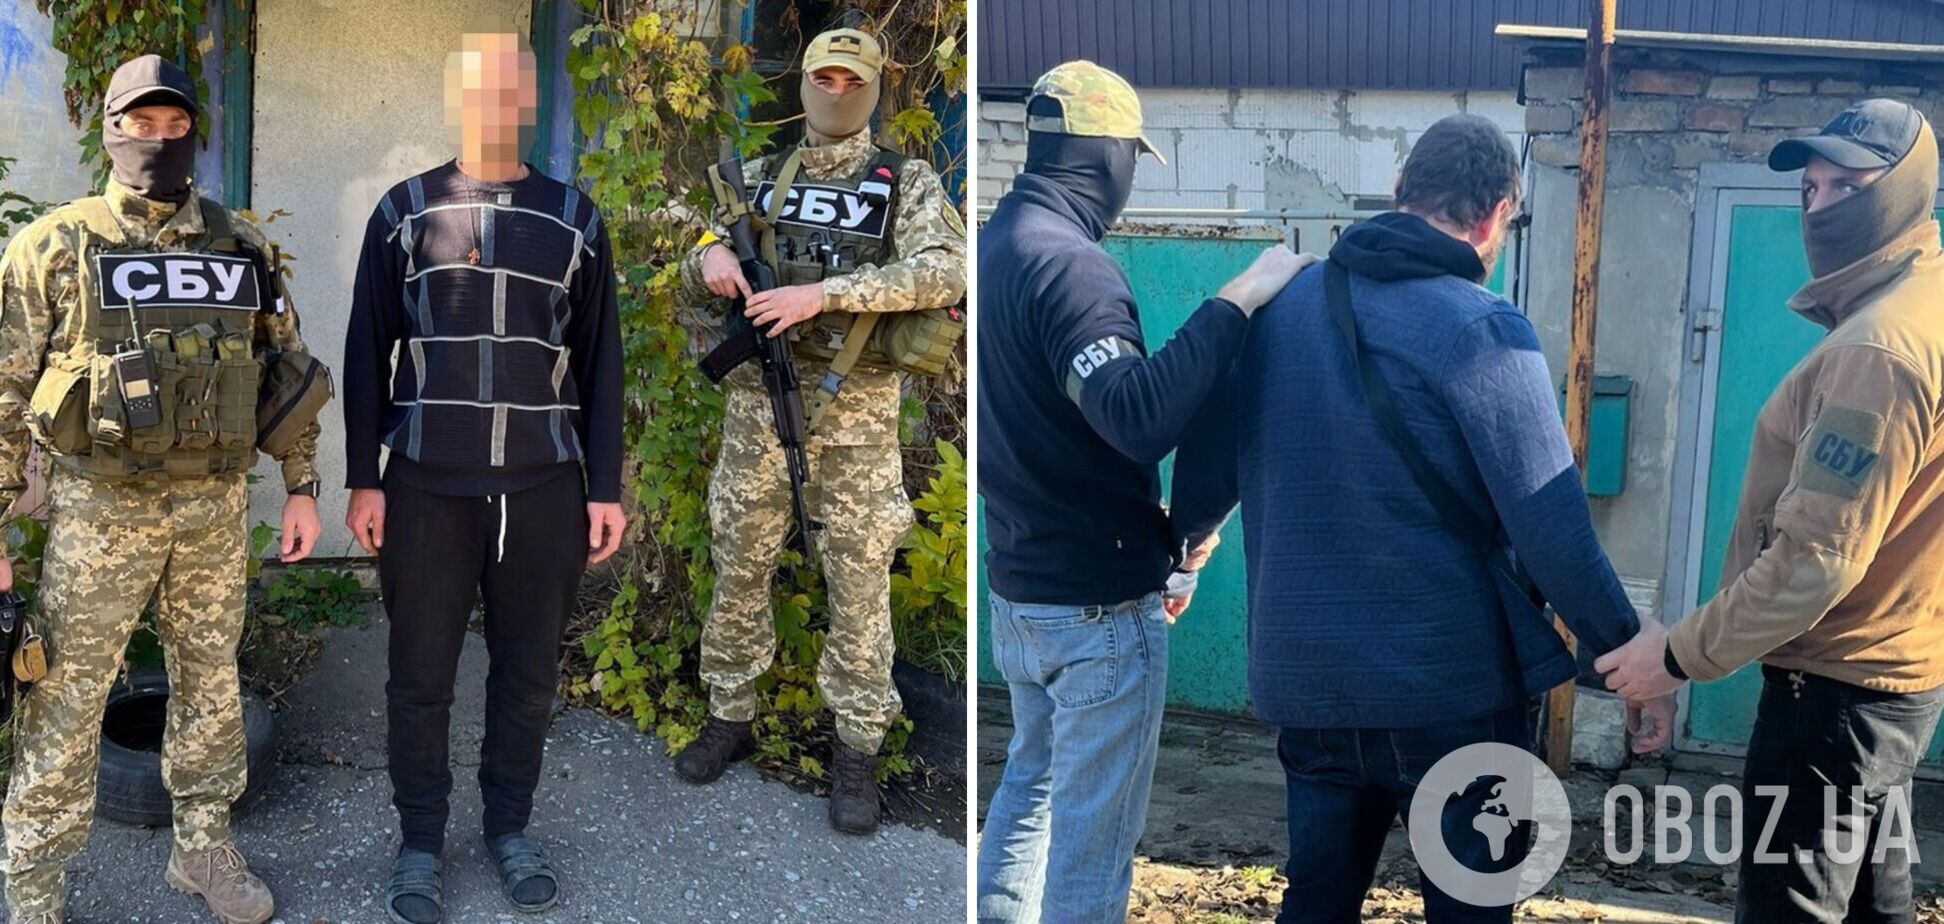 СБУ обезвредила на Донетчине российских агентов, которые охотились на Javelin: обоим сообщили о подозрении. Фото